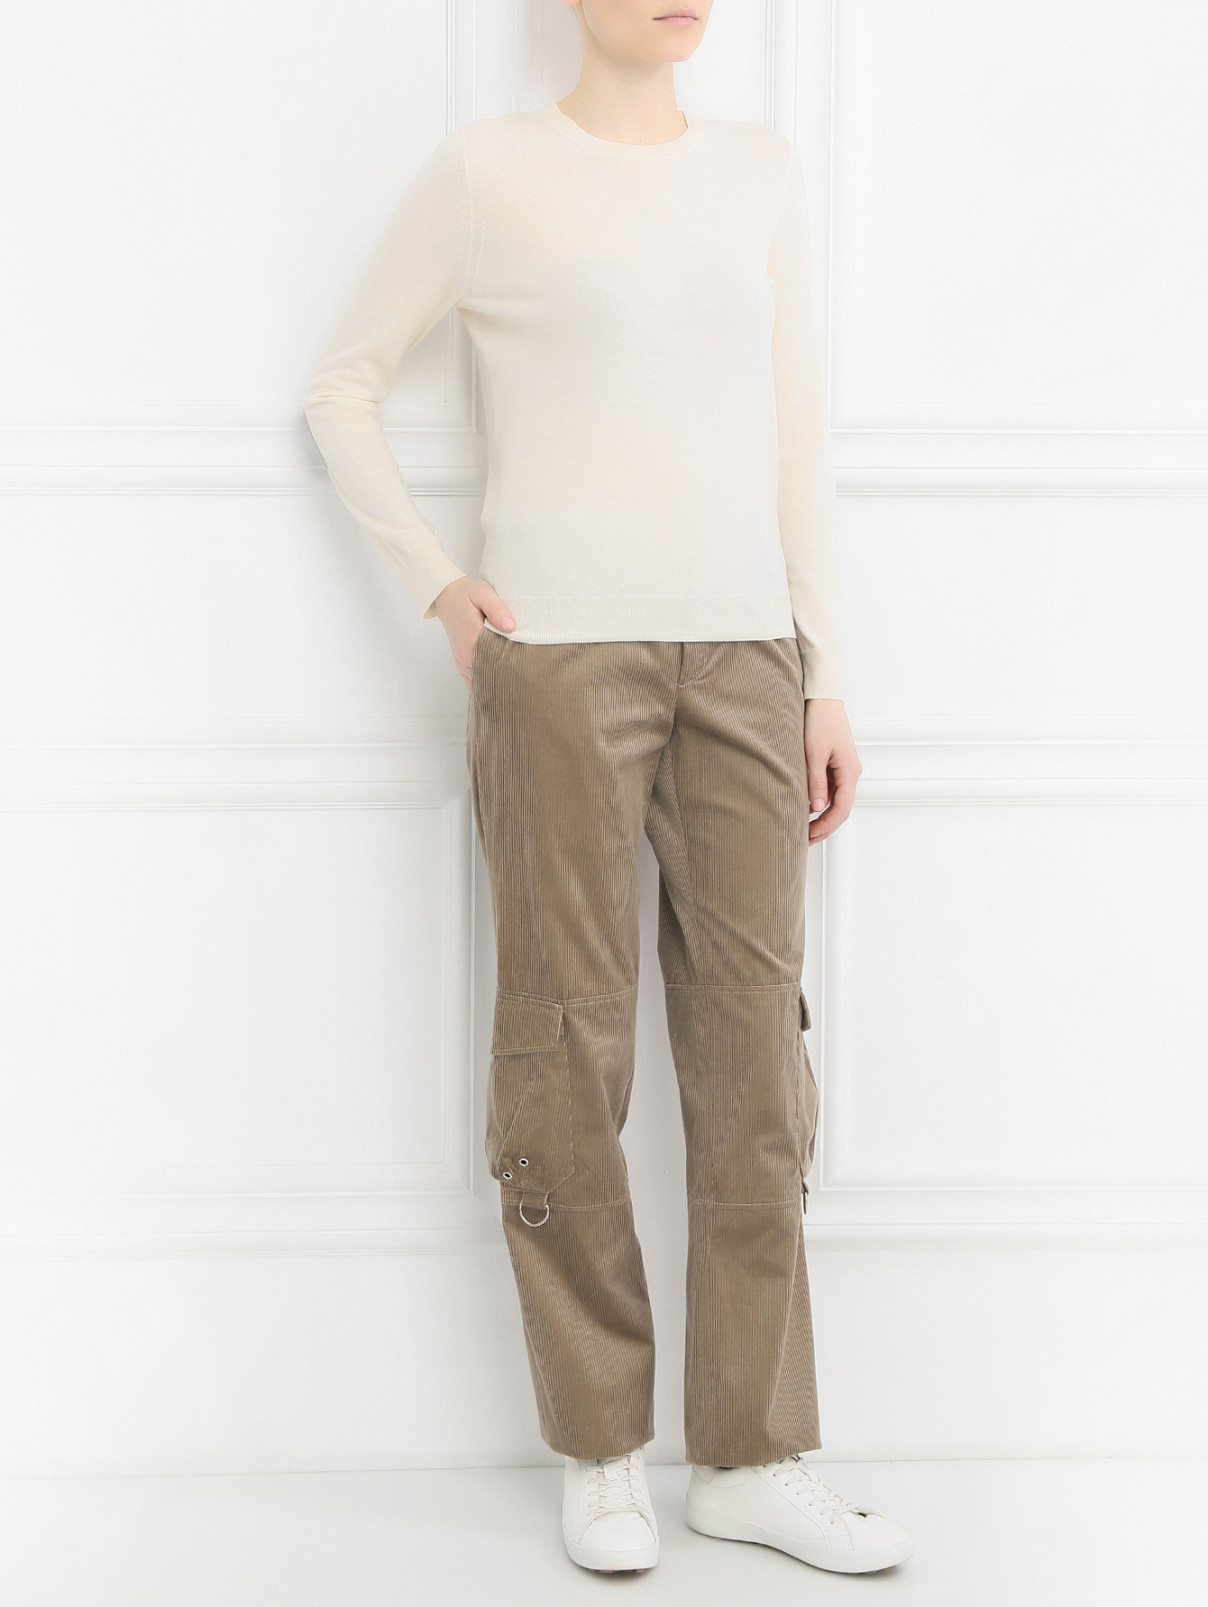 Вельветовые брюки с накладными карманами Kris van Assche  –  Модель Общий вид  – Цвет:  Бежевый